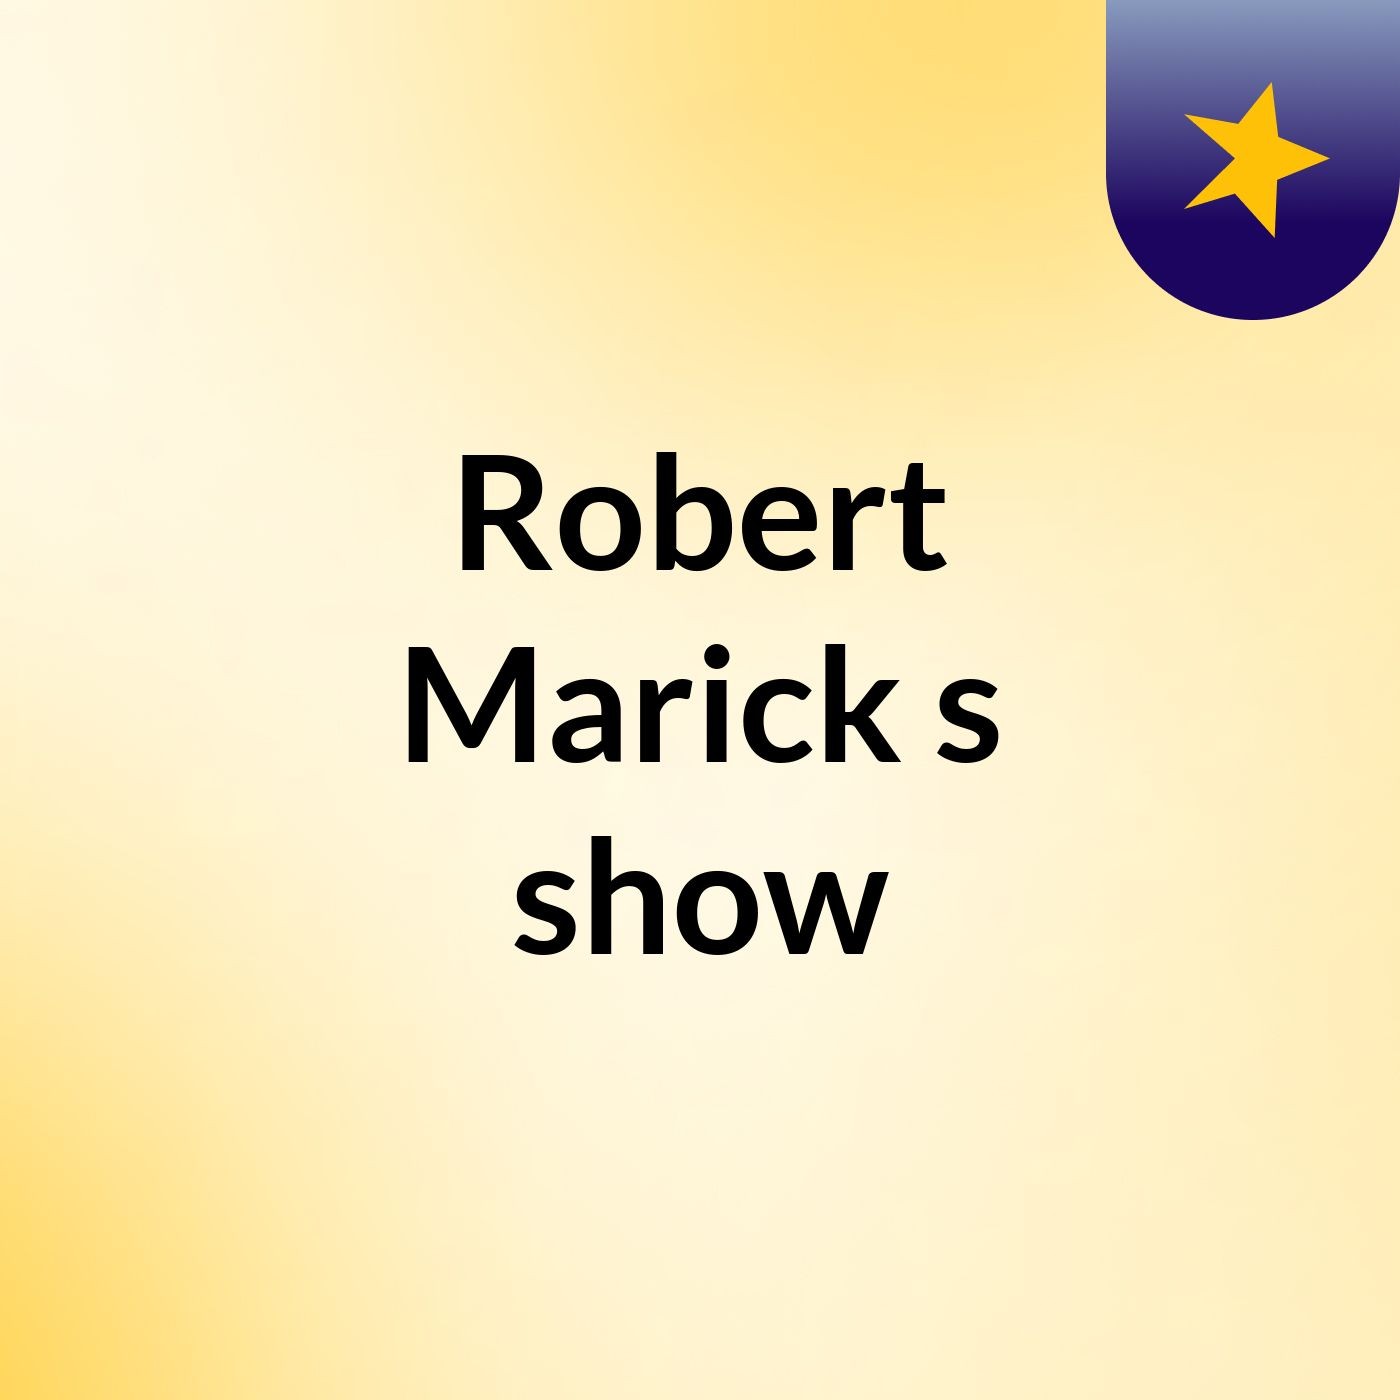 Episode 3 - Robert Marick's show